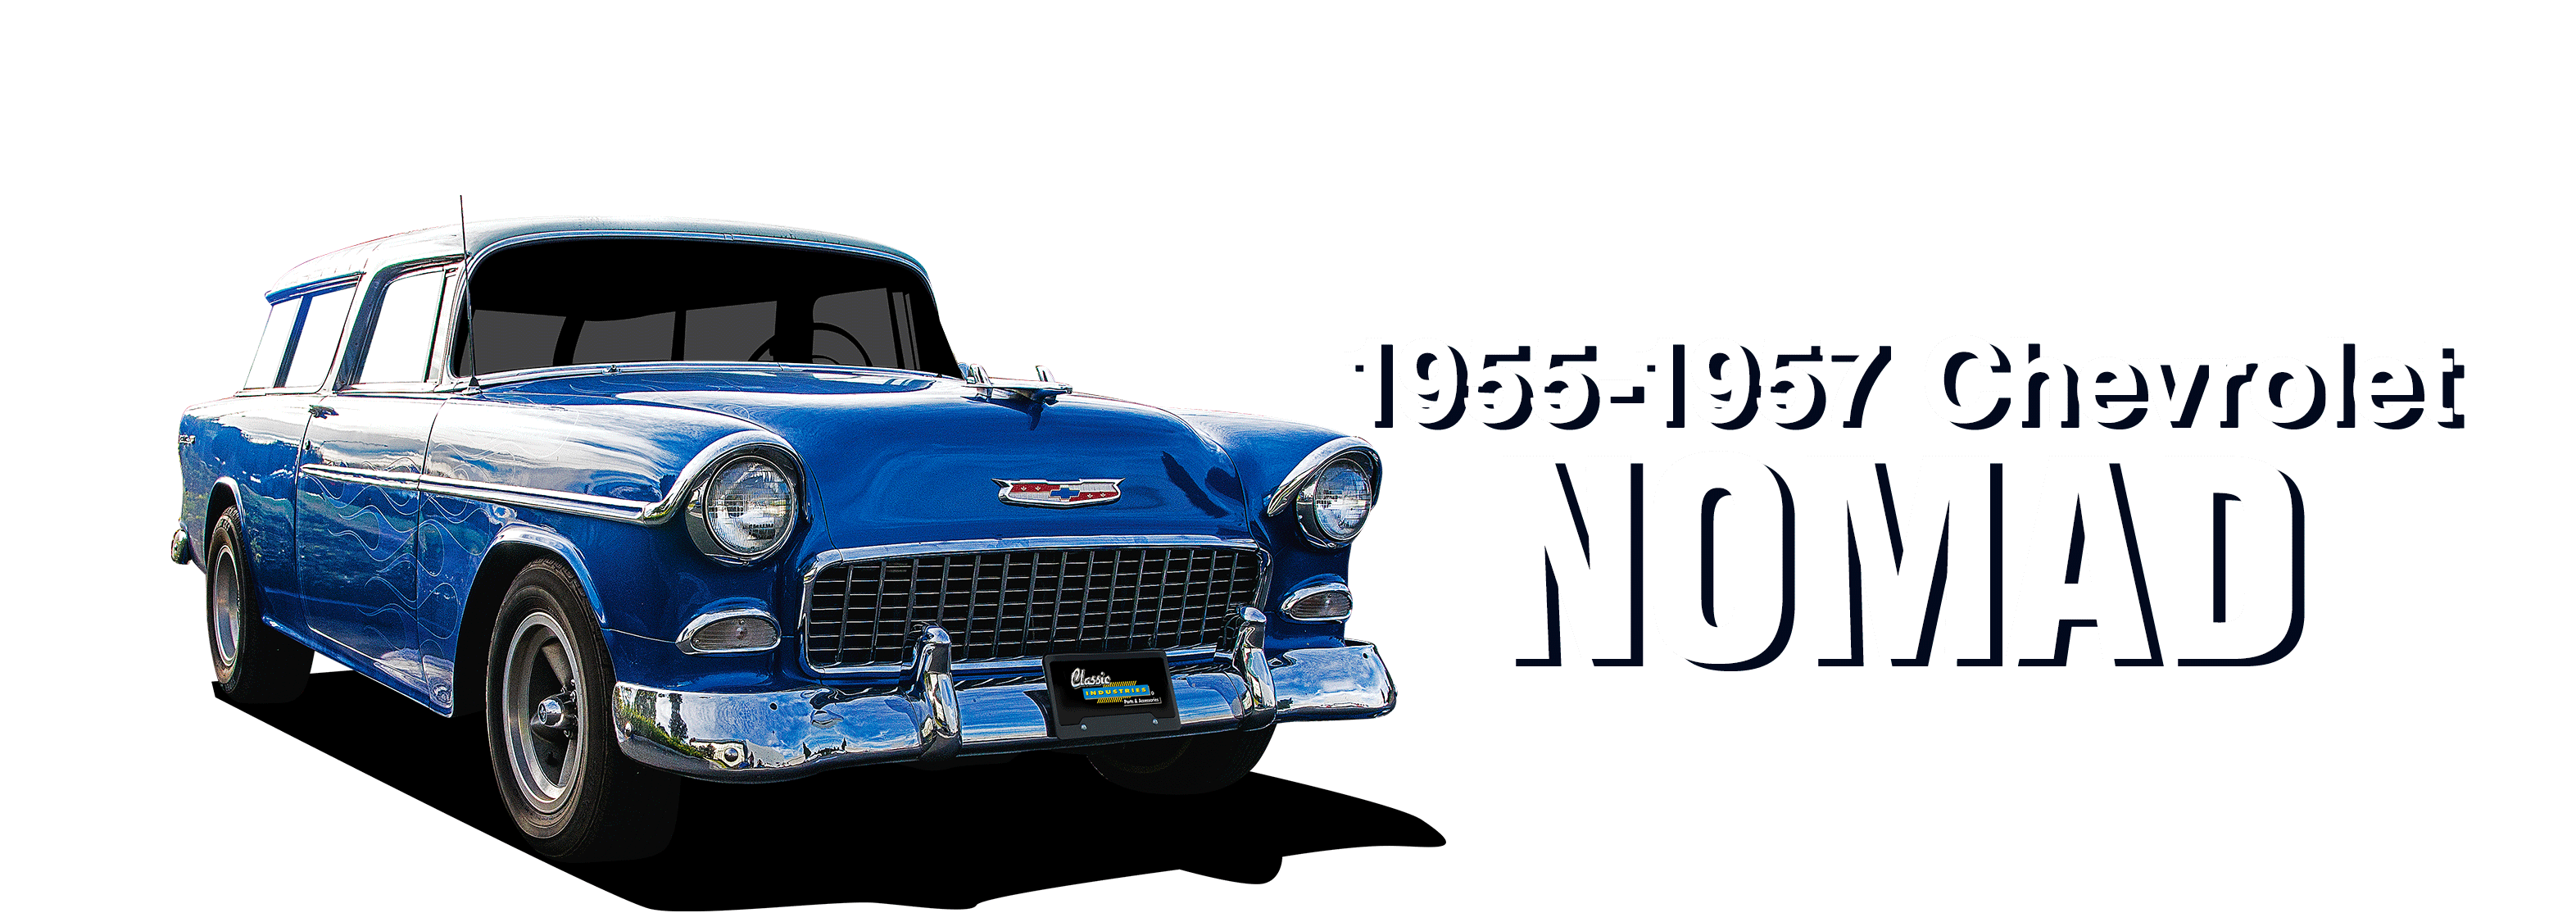 1955-1957 Chevrolet Nomad